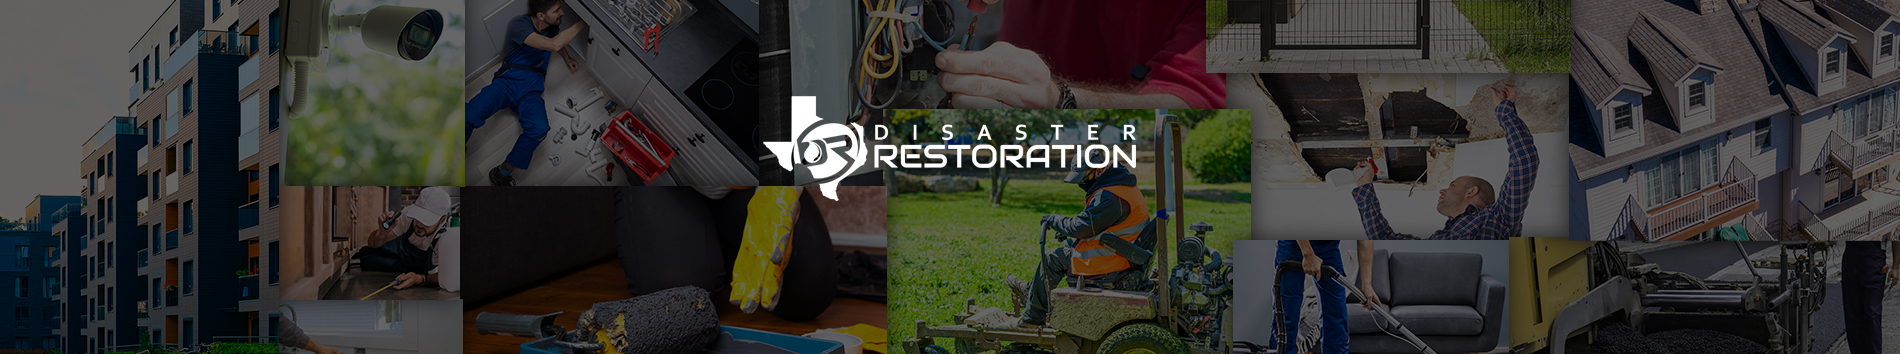 Texas Disaster Restoration